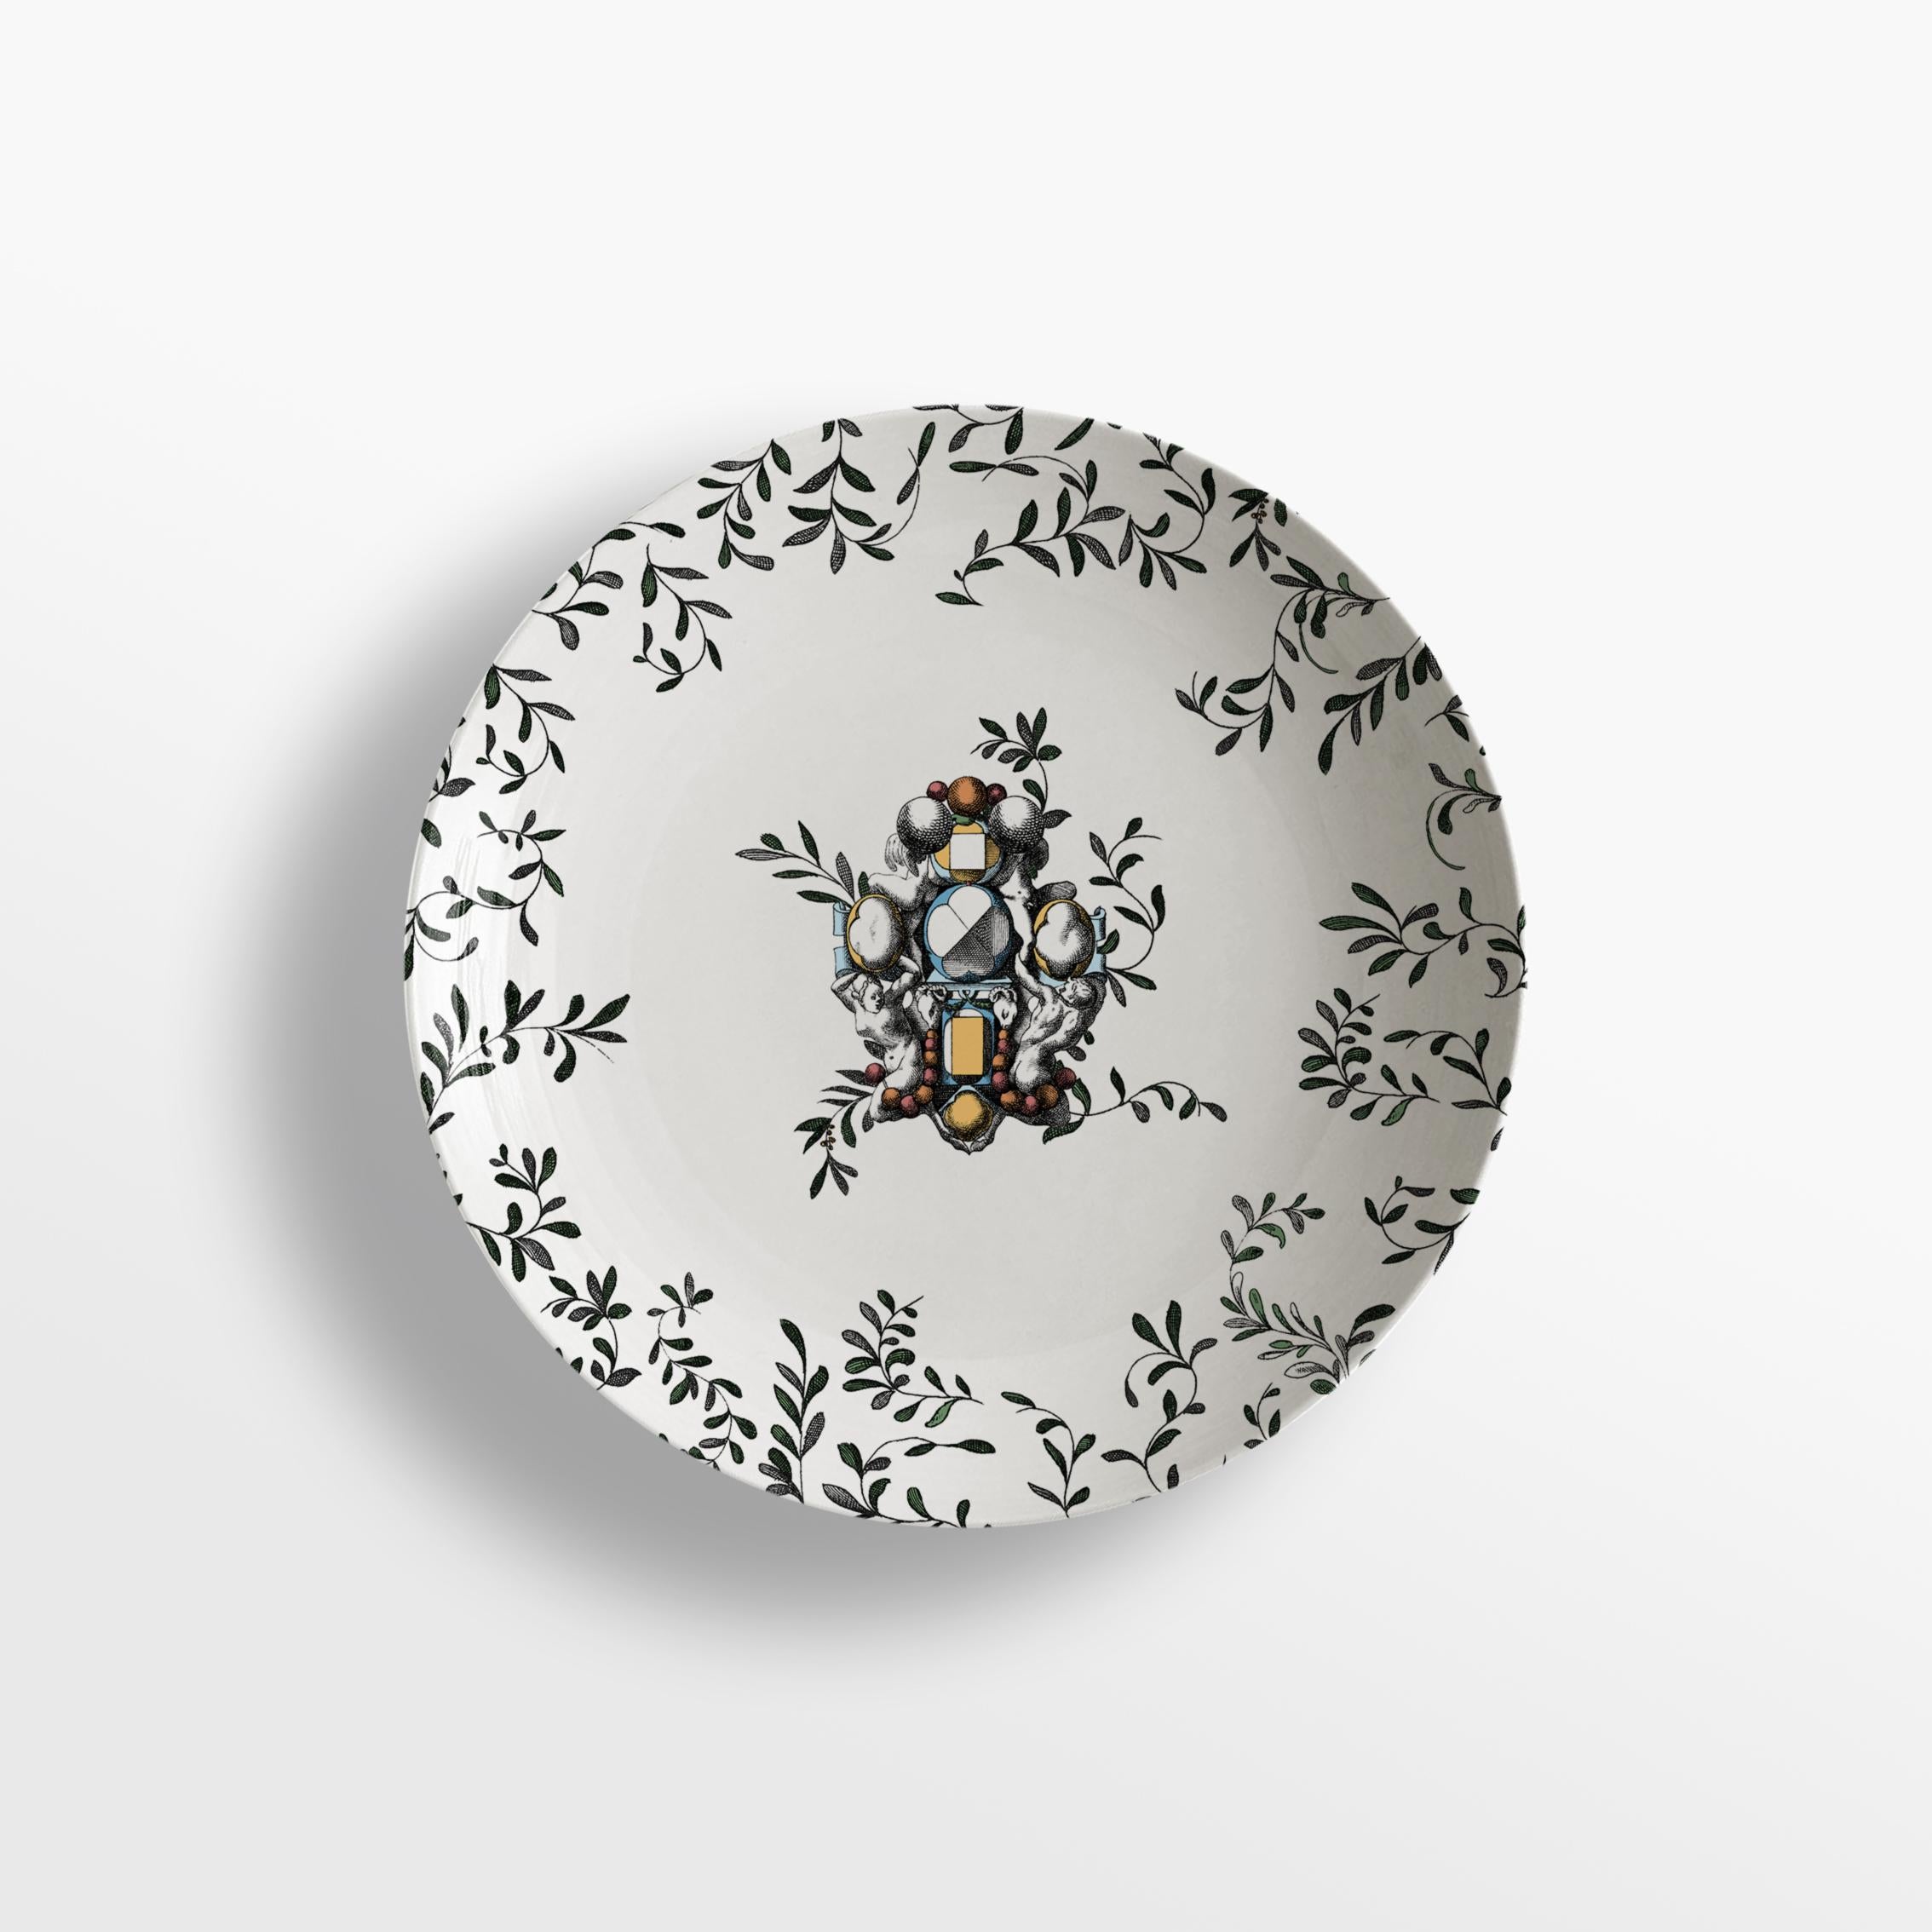 La collection de porcelaine Pompei by Grand Tour By Vito Nesta redonne vie à la décoration murale des Grottesche dans une tonalité contemporaine. Des dessins anciens sont repris et déclinés sur les différents formats de la mise en place de manière à